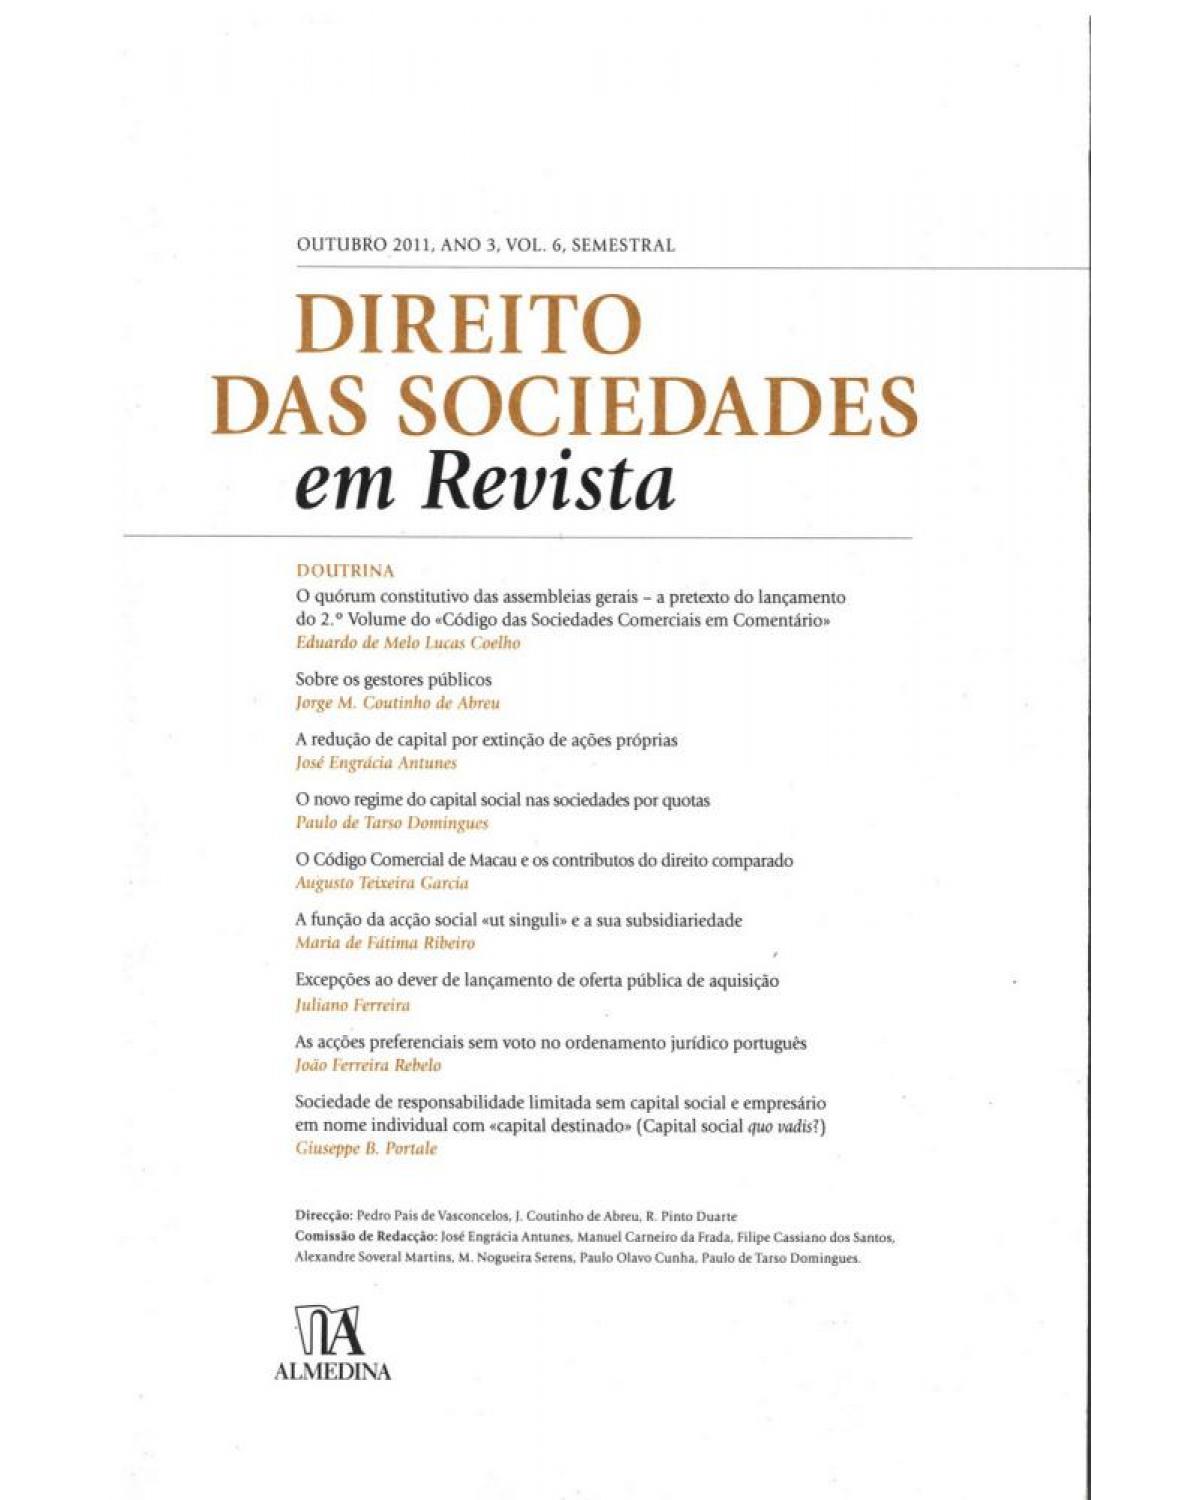 Direito das sociedades em revista - Volume 6: ano 3 (outubro 2011) - 1ª Edição | 2011